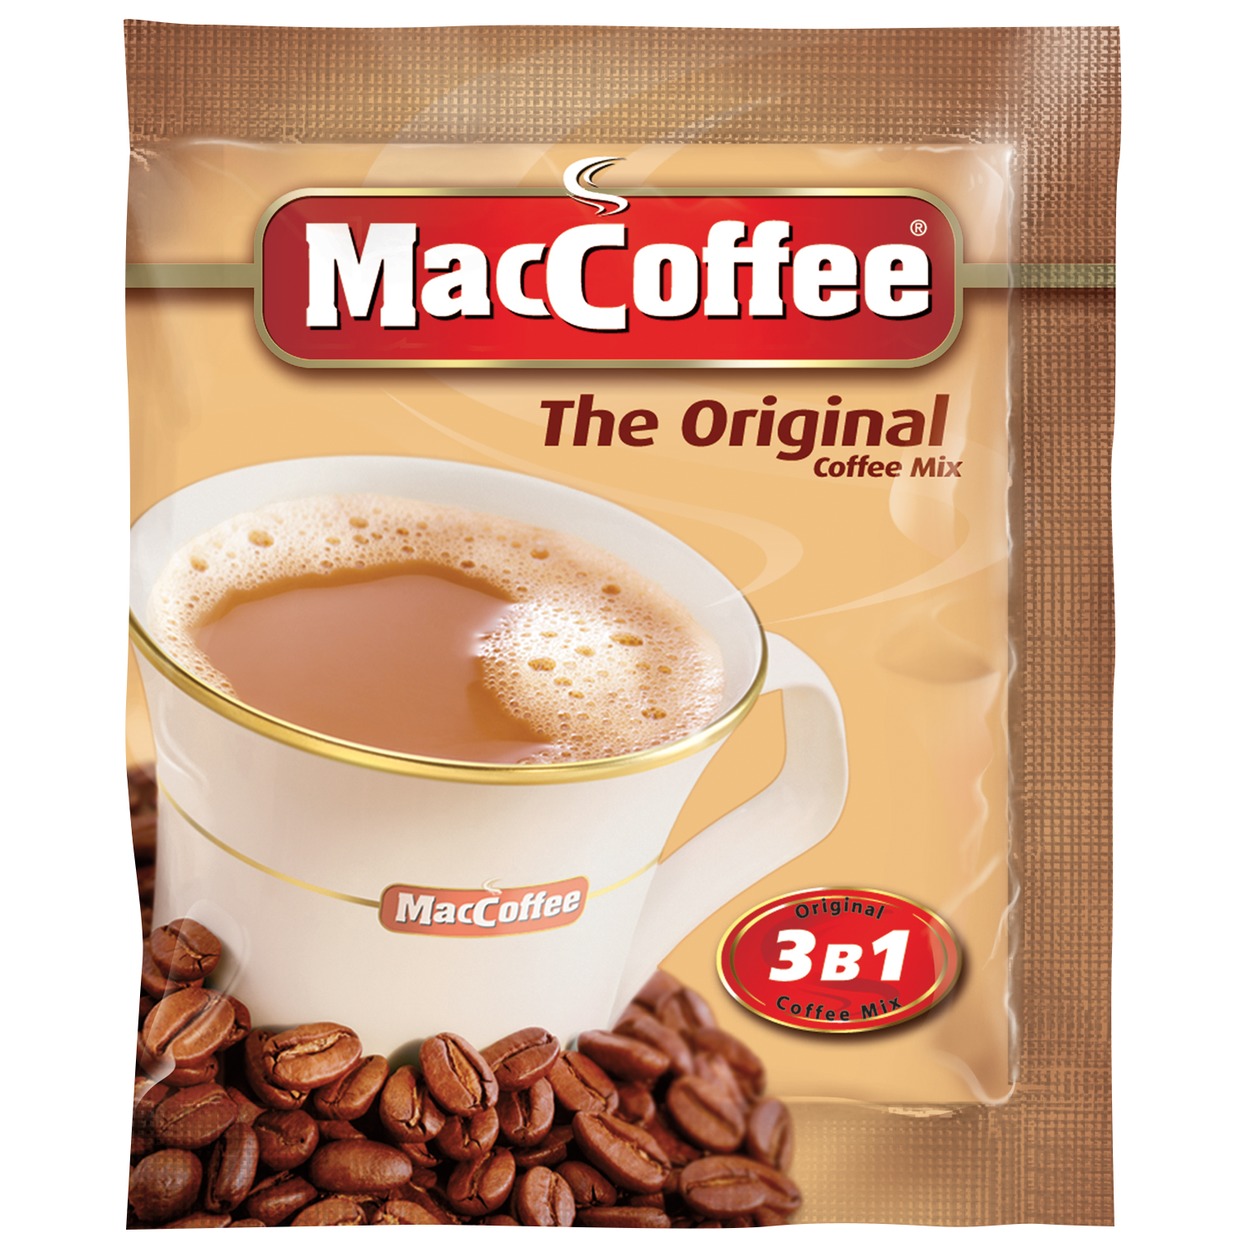 Напиток кофейный MacCoffee Original растворимый 3в1 20г по акции в Пятерочке